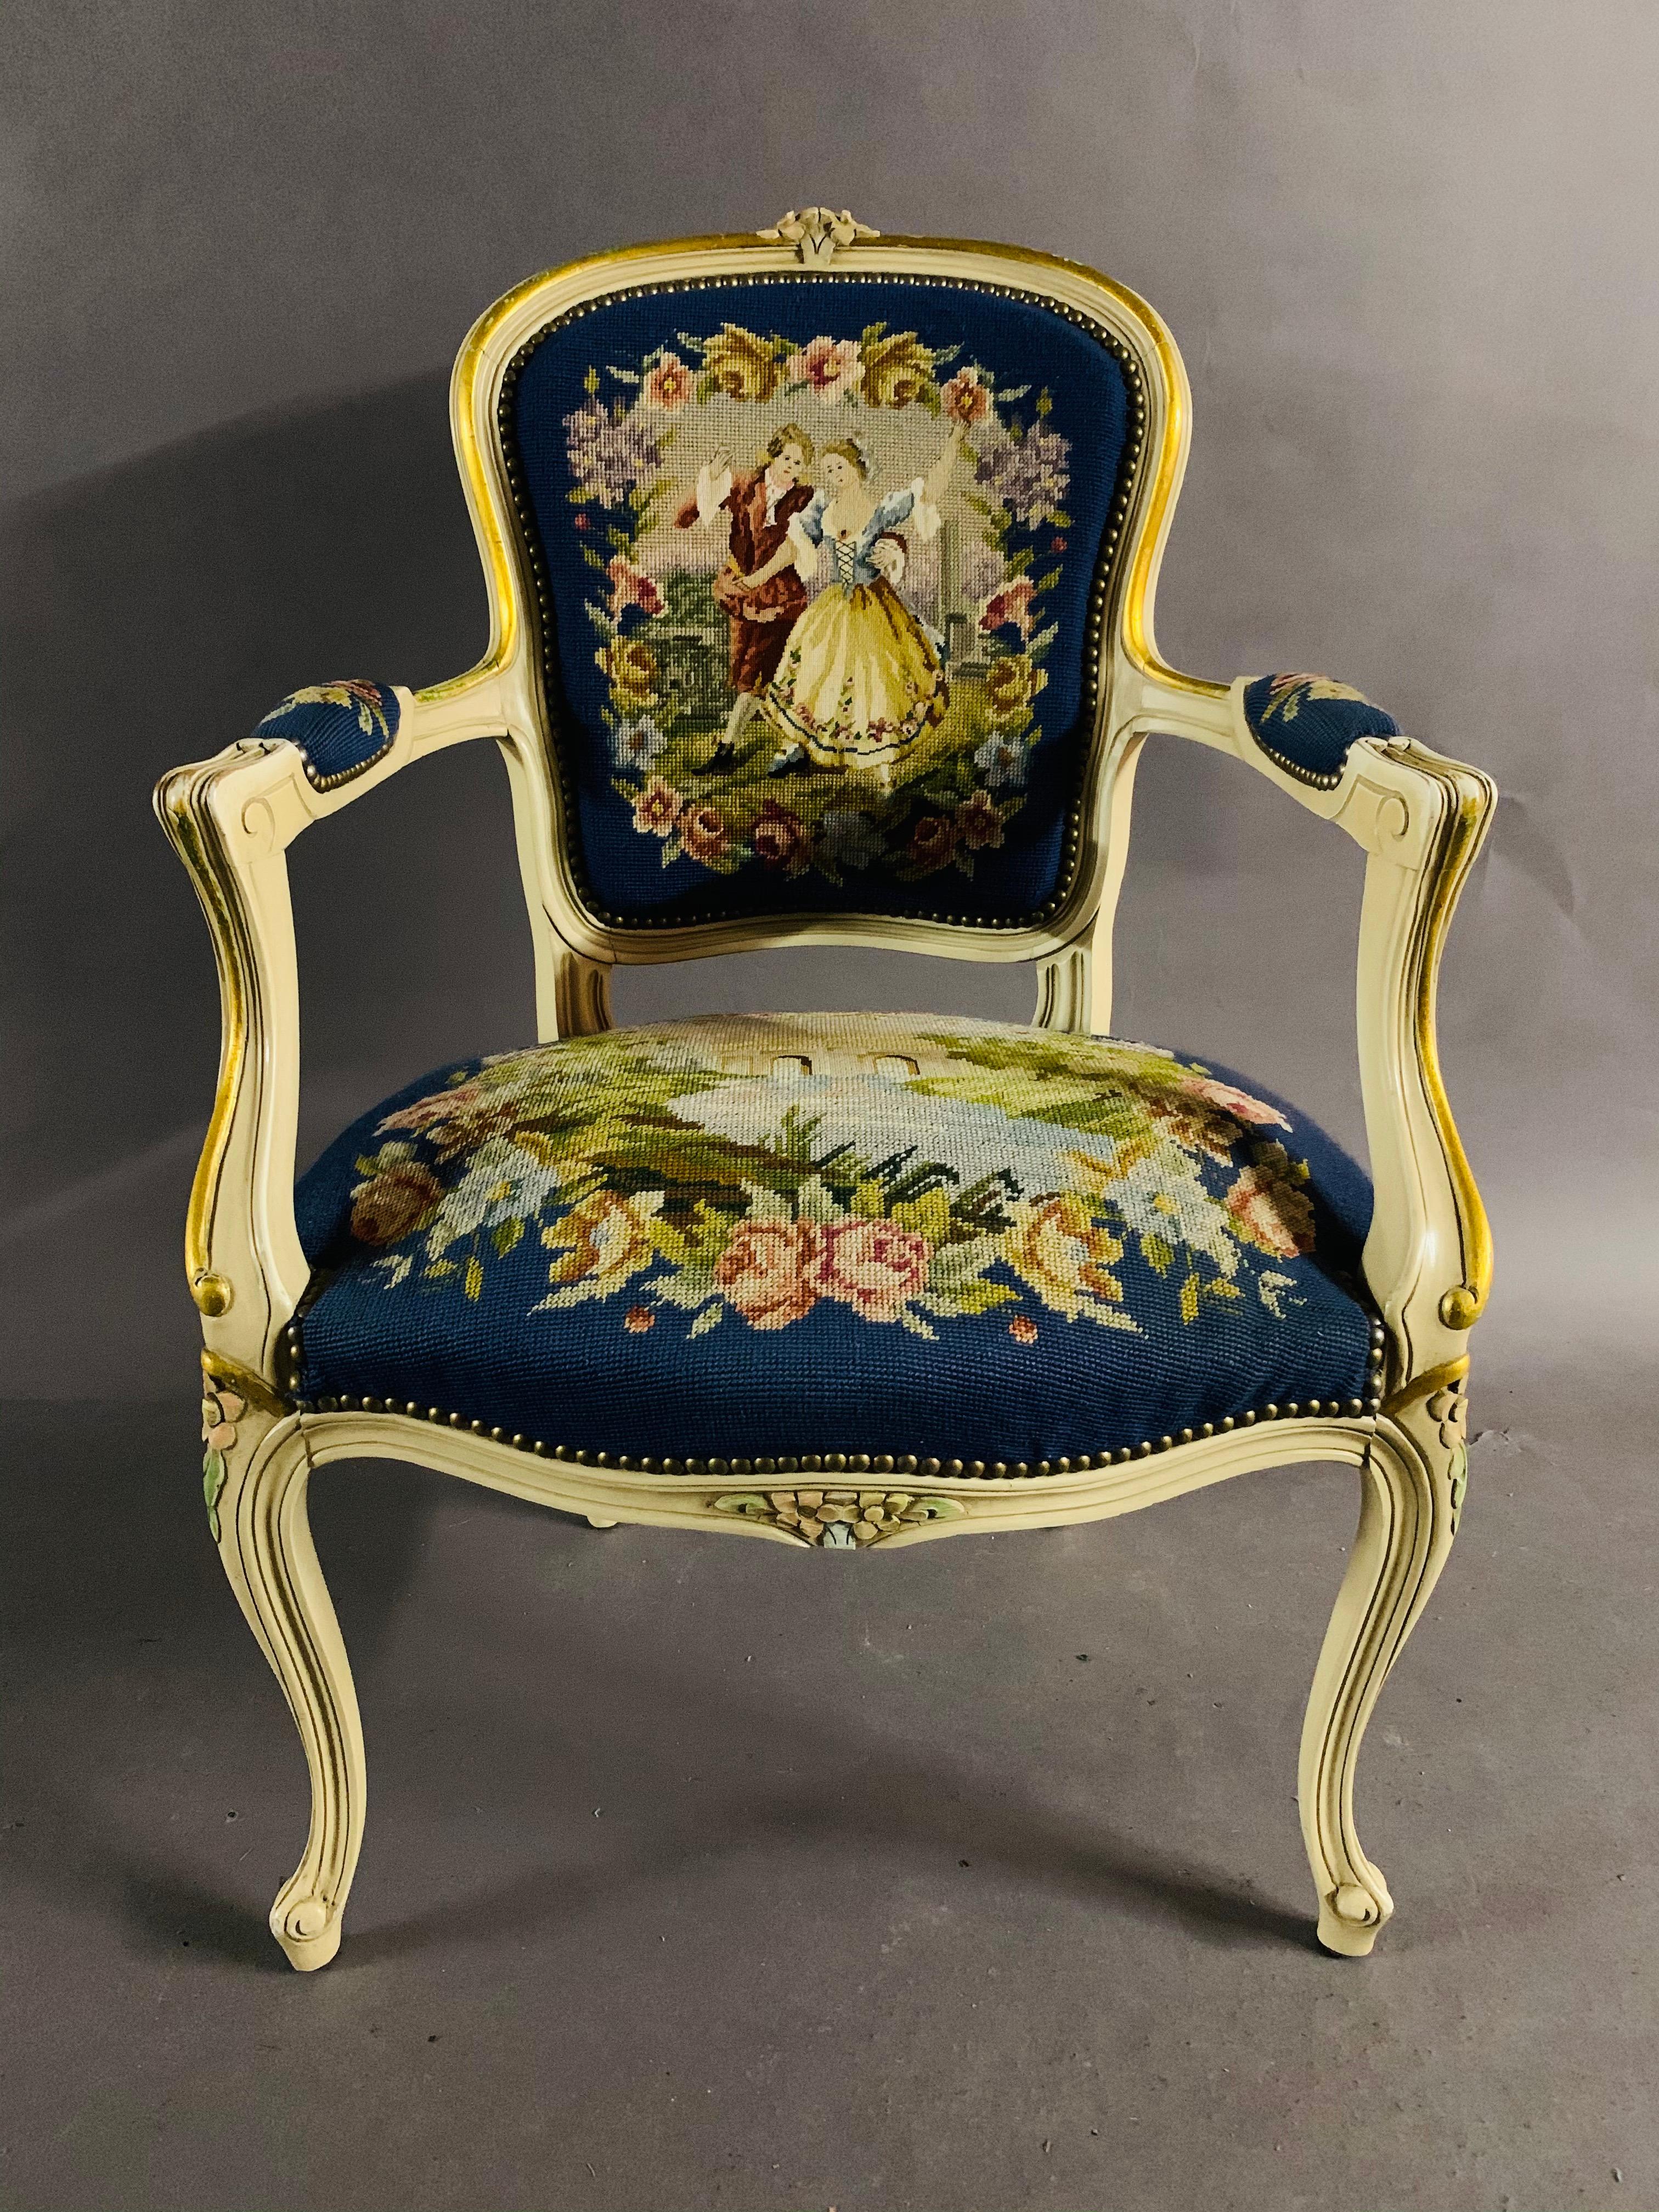 schöner Sessel aus dem 20. Jahrhundert im Louis-Quinze-Stil mit Gobelin-Stickerei.

Abmessungen.
Höhe 92 cm
Breite 62 cm
Tiefe 56 cm
Sitzhöhe 45 cm.